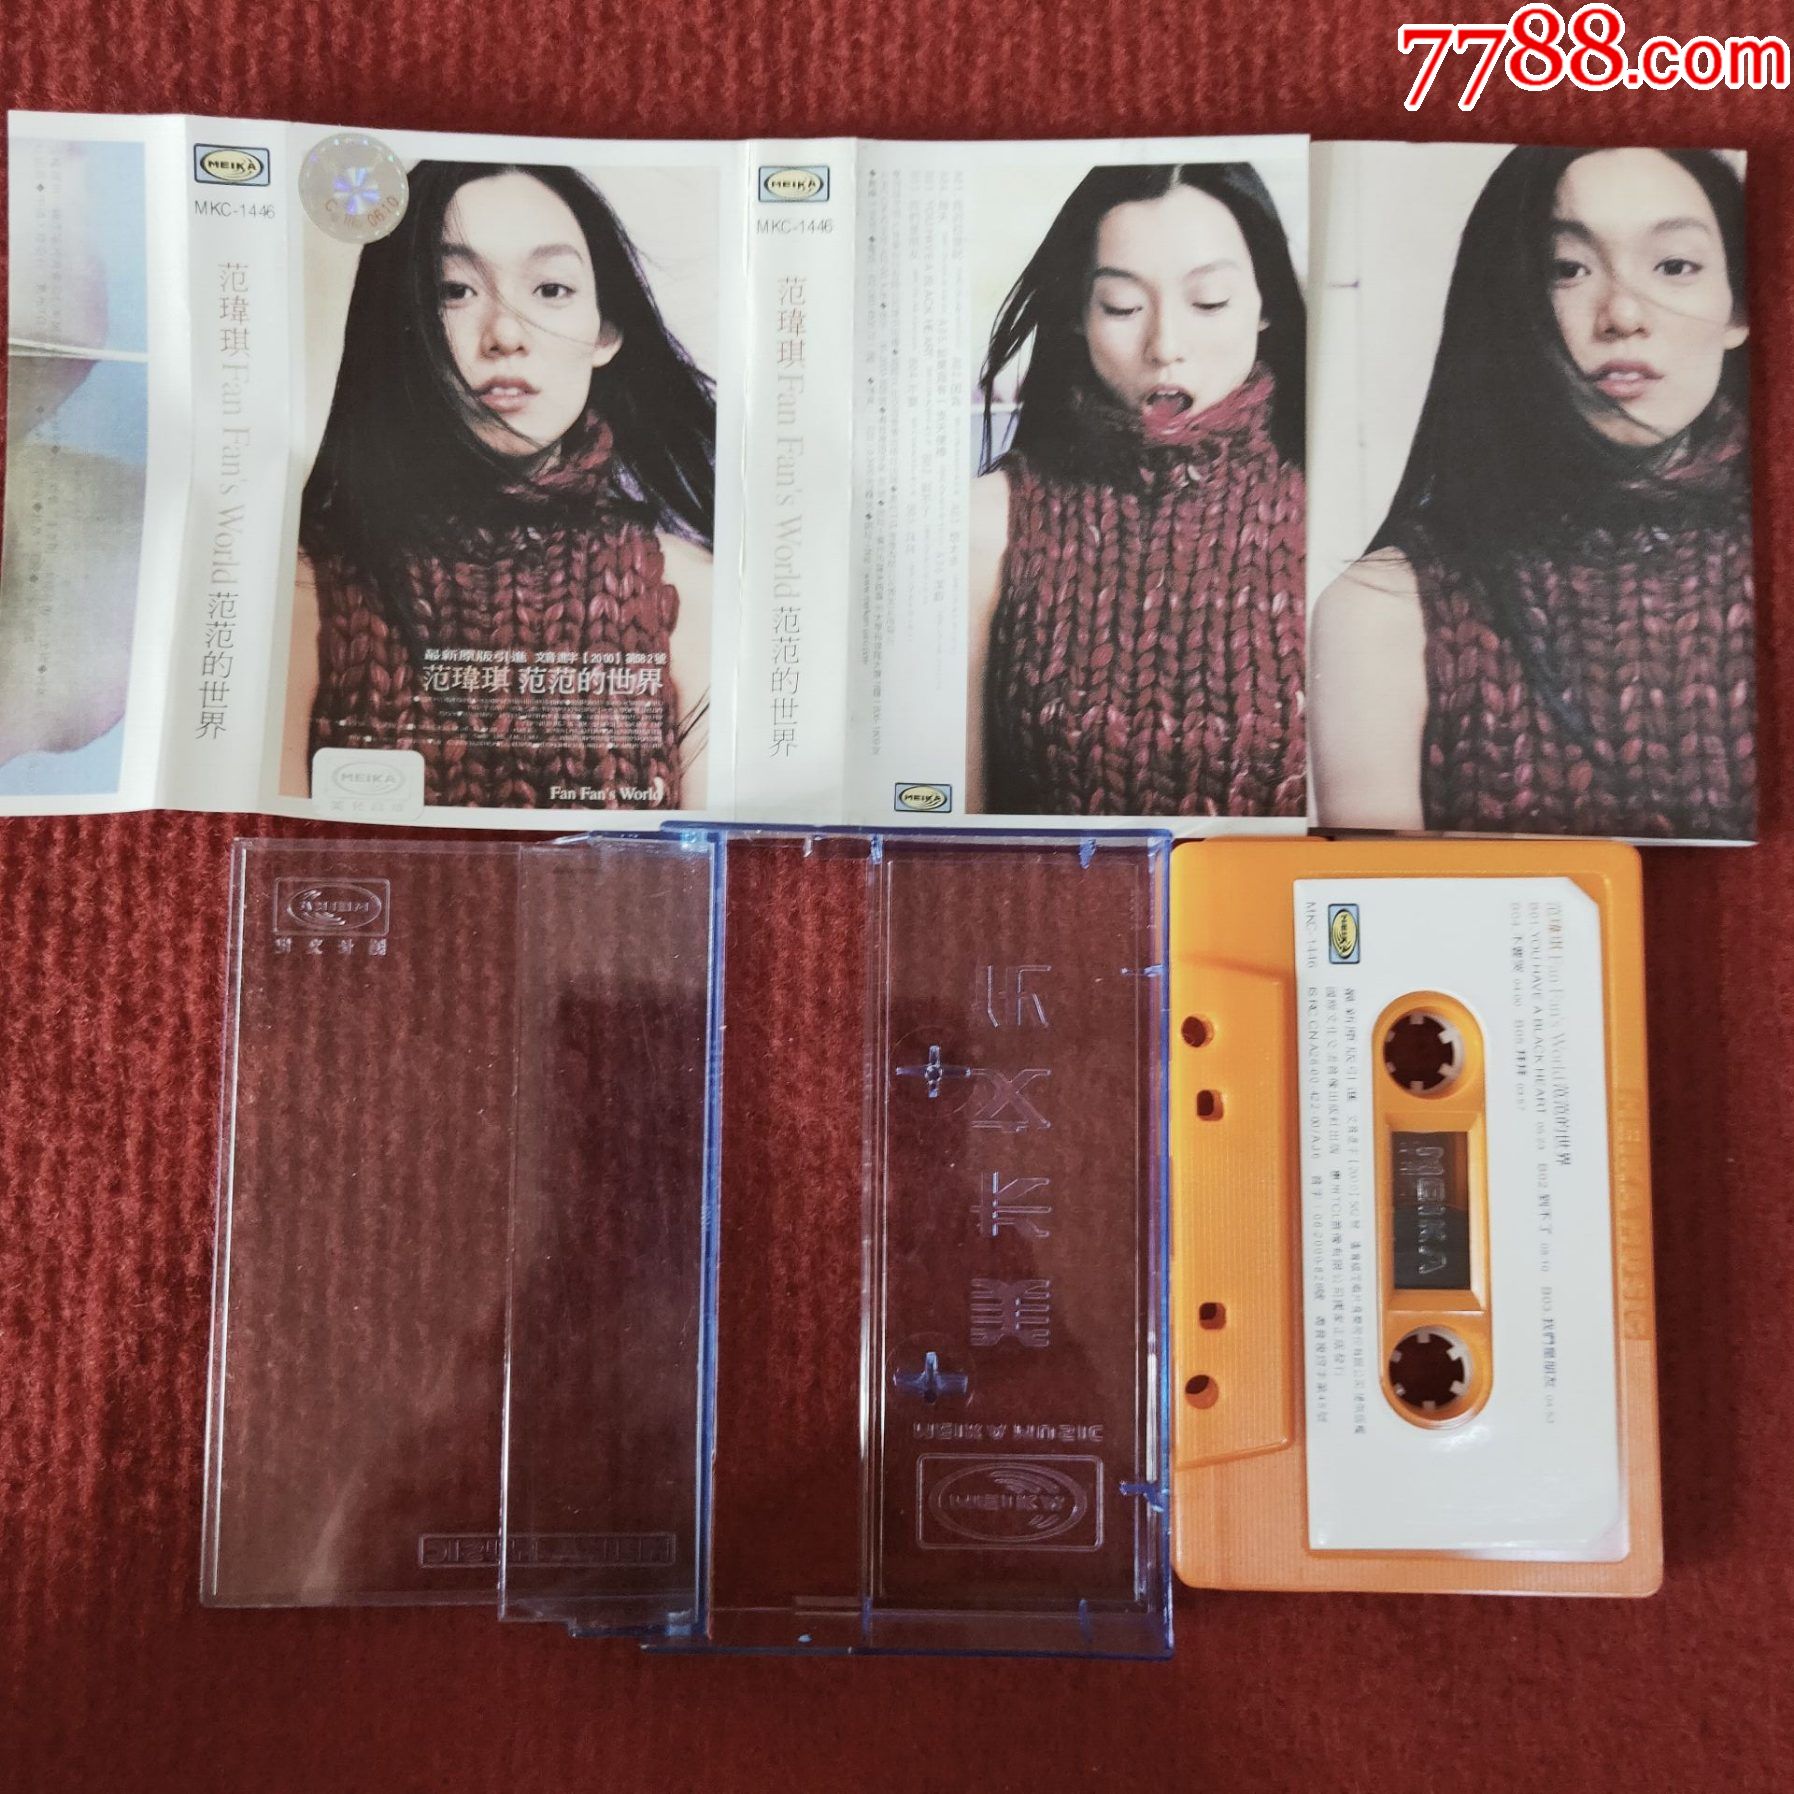 原装正版磁带范玮琪专辑范范的世界国际文化交流音像出版